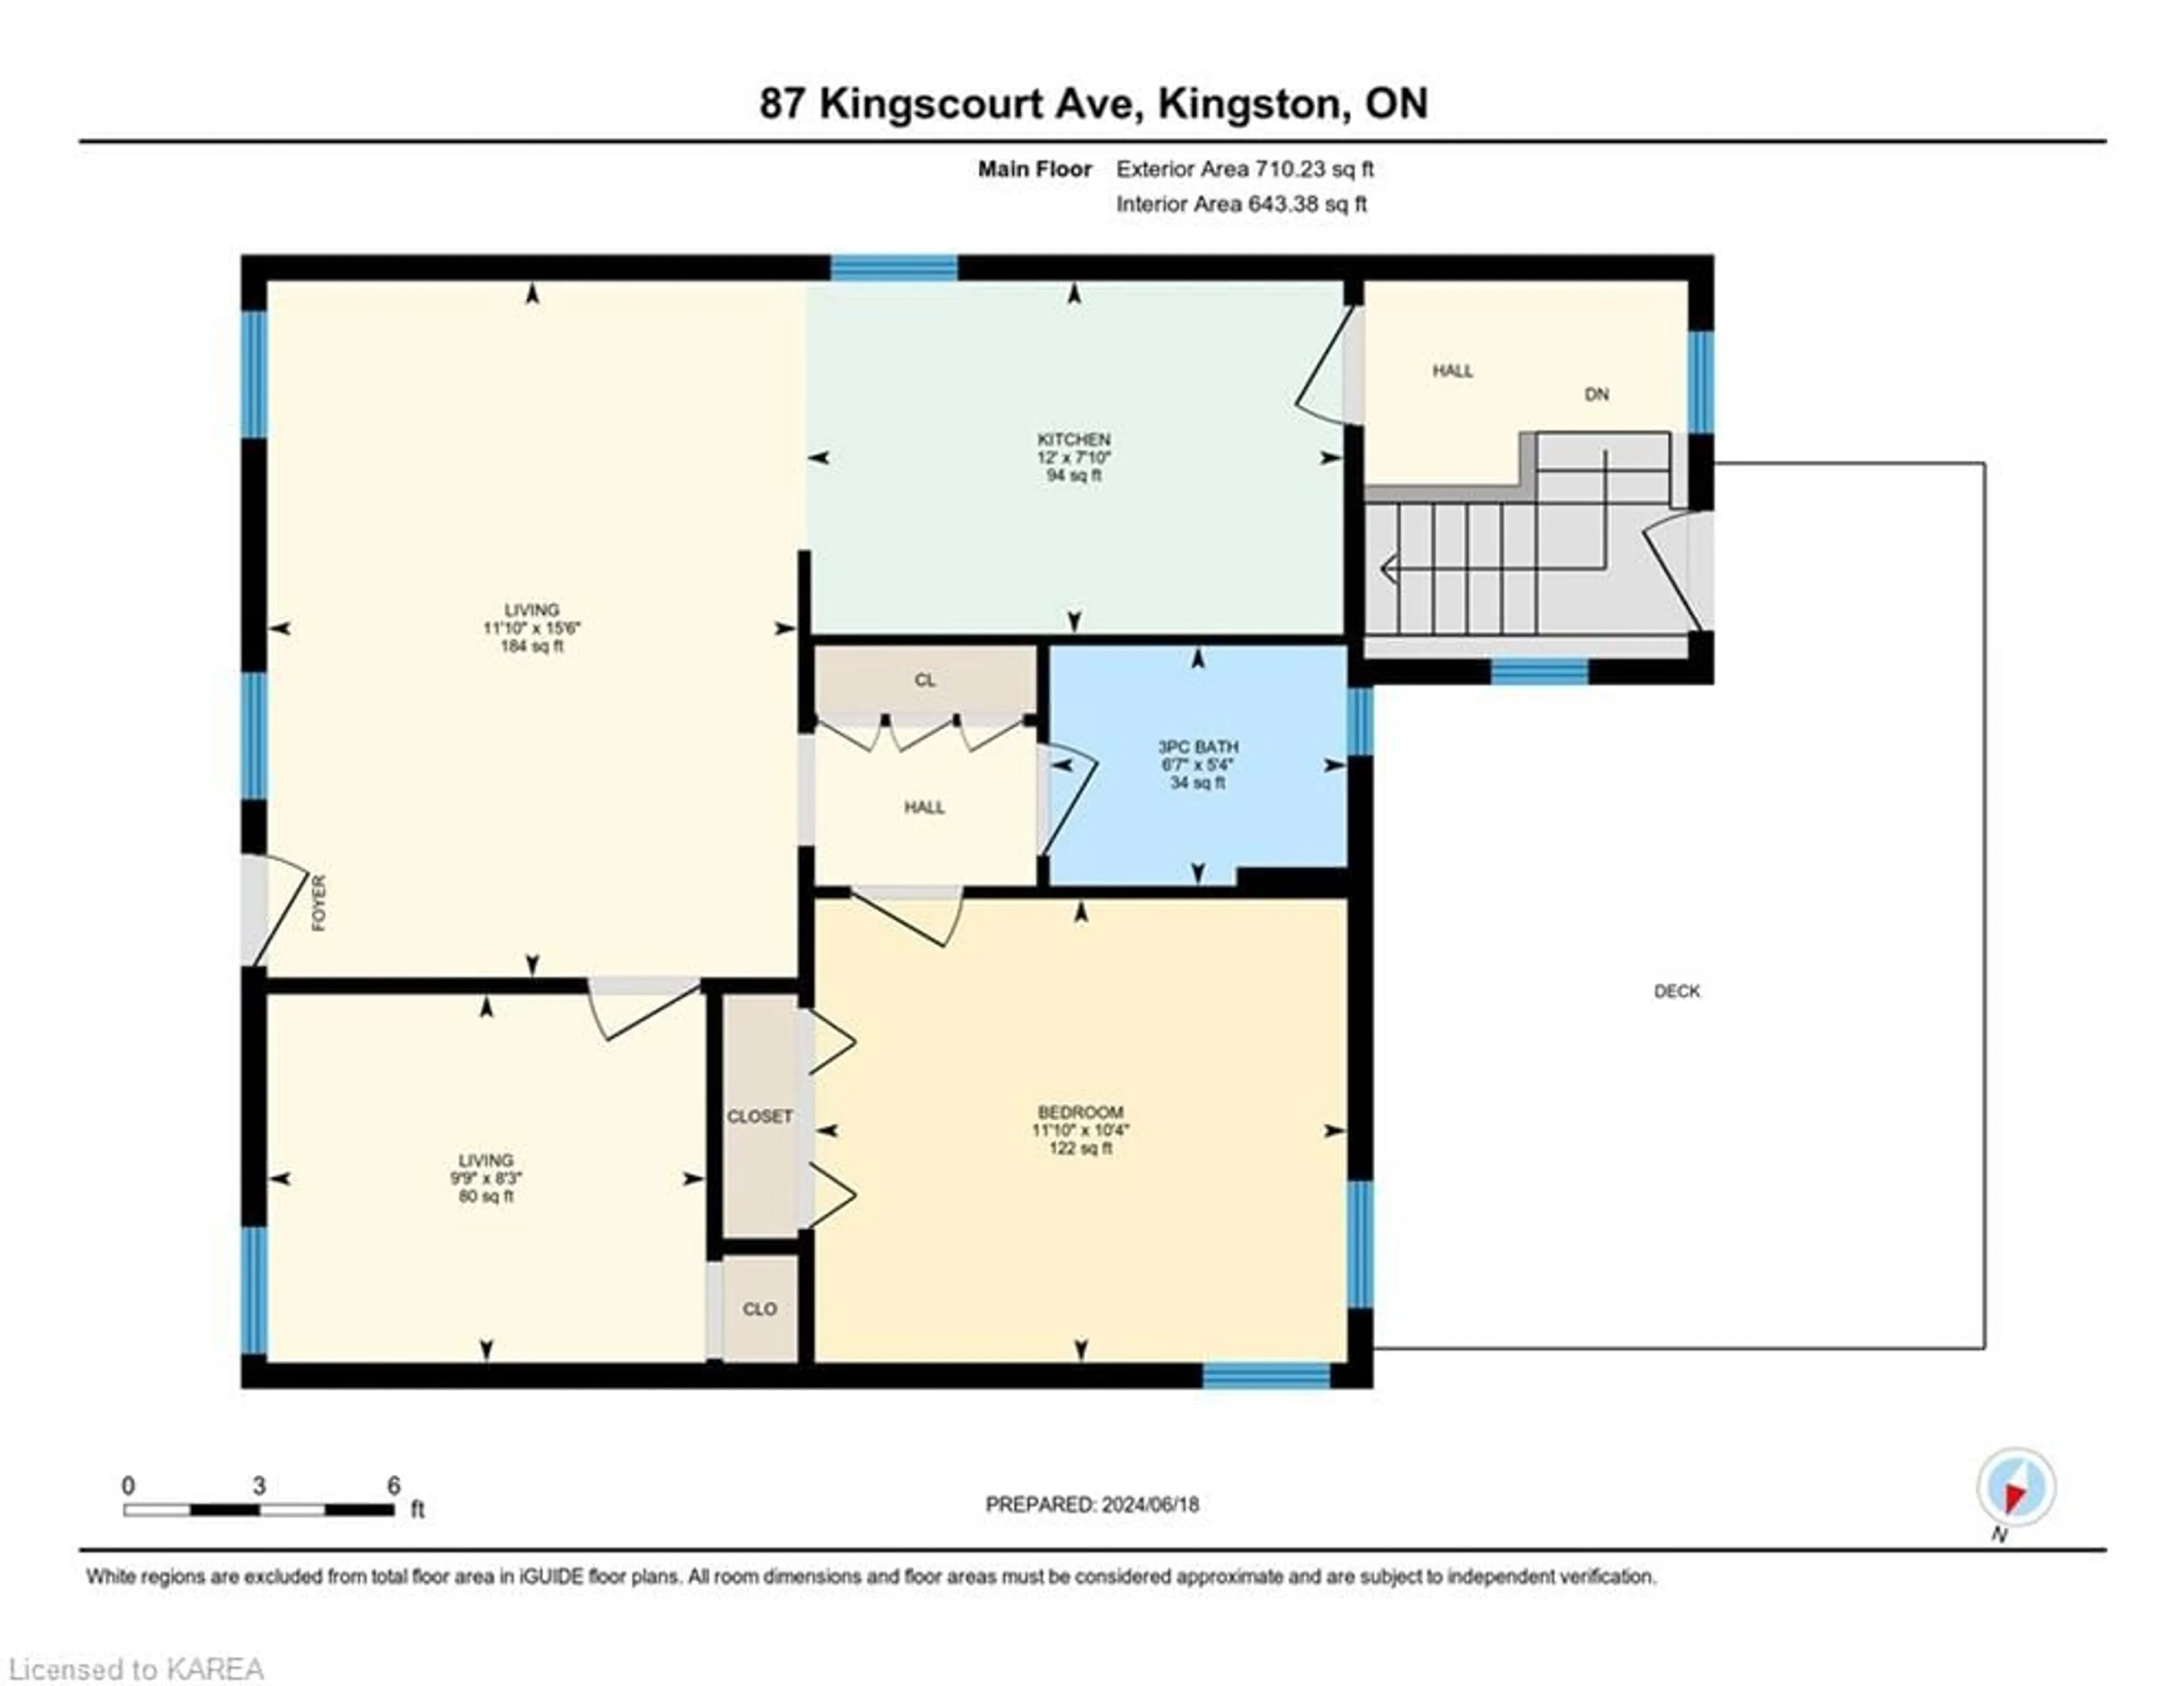 Floor plan for 87 Kingscourt Ave, Kingston Ontario K7K 4N8